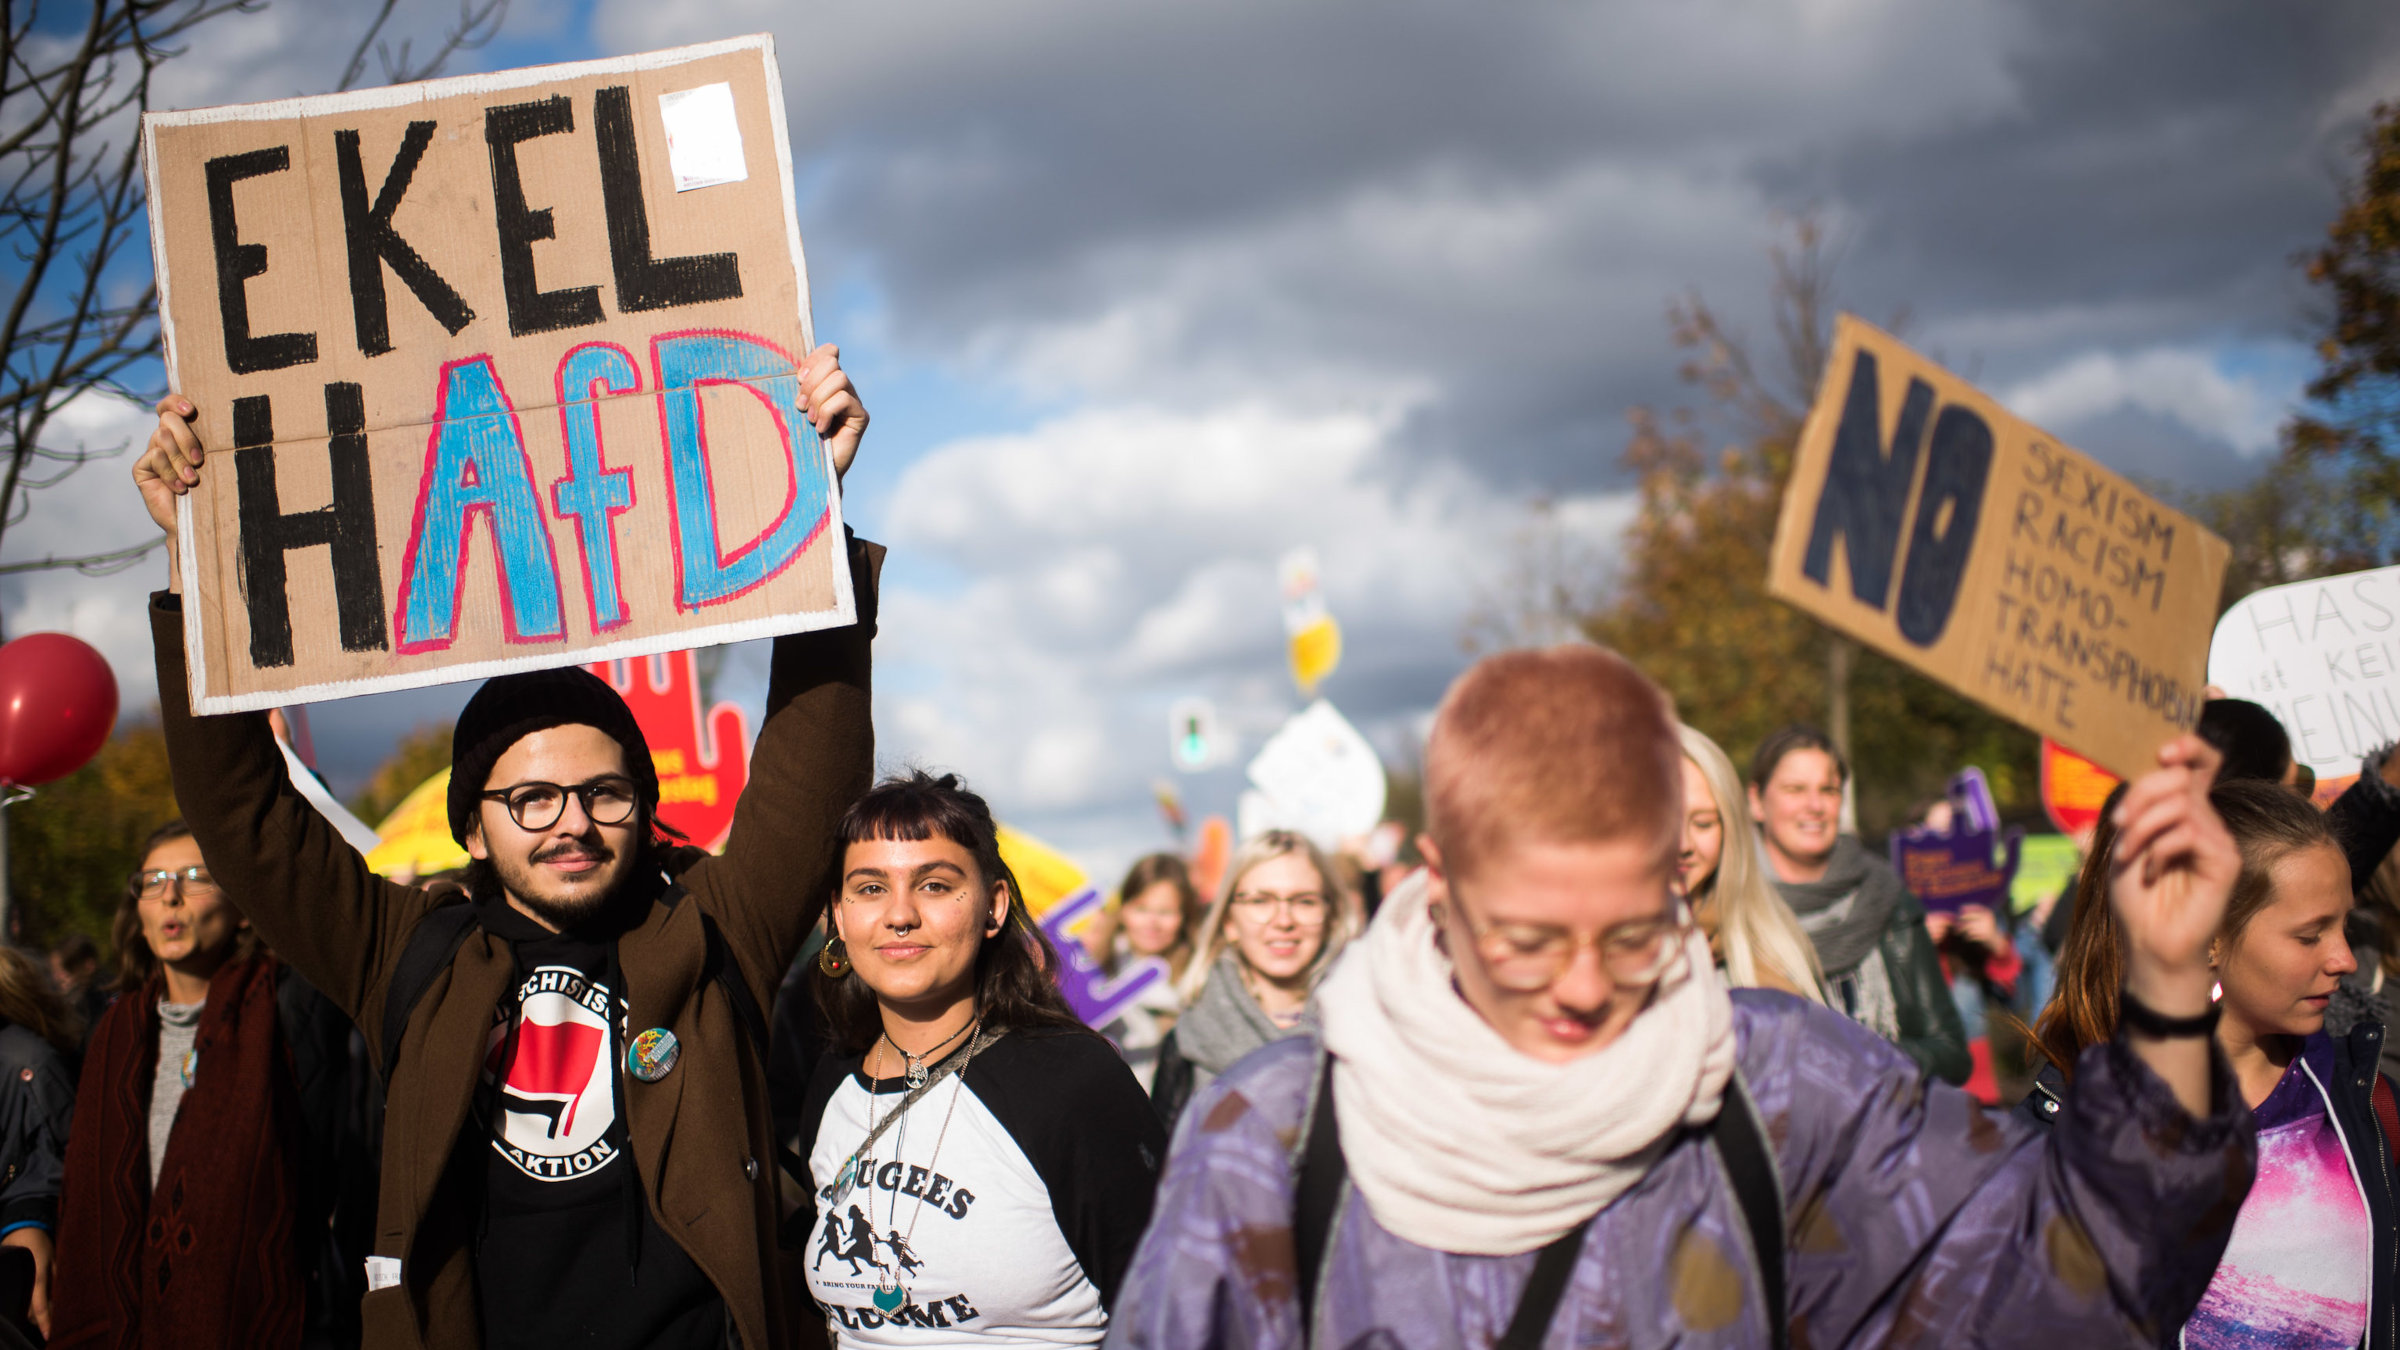 Eine Demo gegen Rechtsextremismus. Zwei Personen halten ein Schild mit der Aufschrift "EkelhAfD" in die Höhe, eine andere Person ein Schild, auf dem steht "No Sexism, Racism, Homo/Transphobia, Hate".